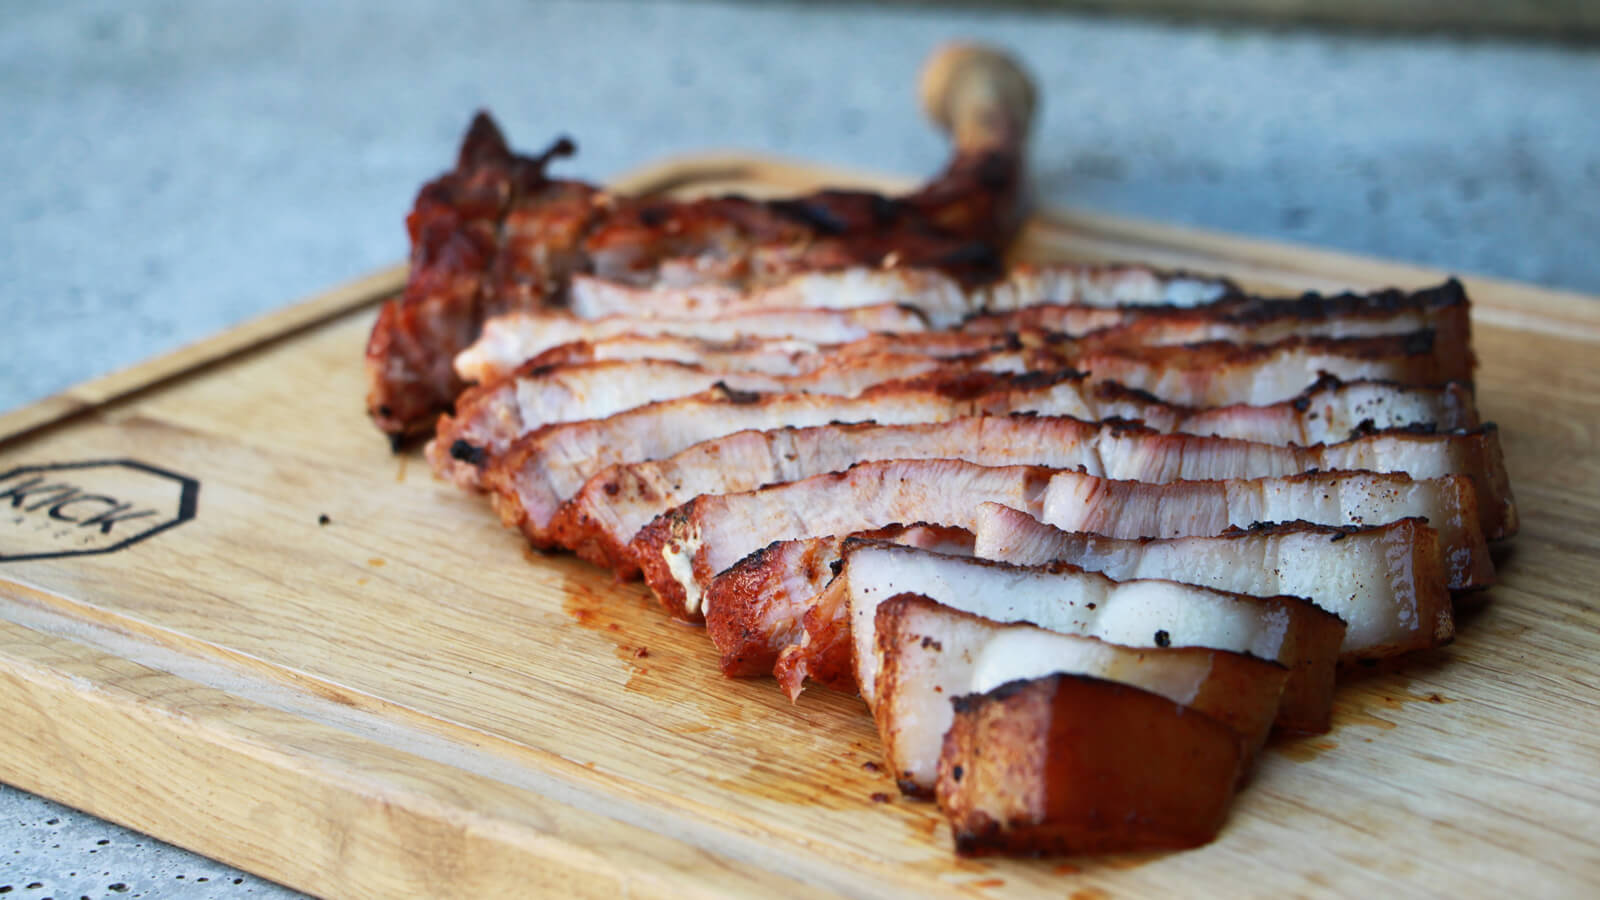 Tomapork van de BBQ: een heerlijk en stoer stuk varkensvlees!